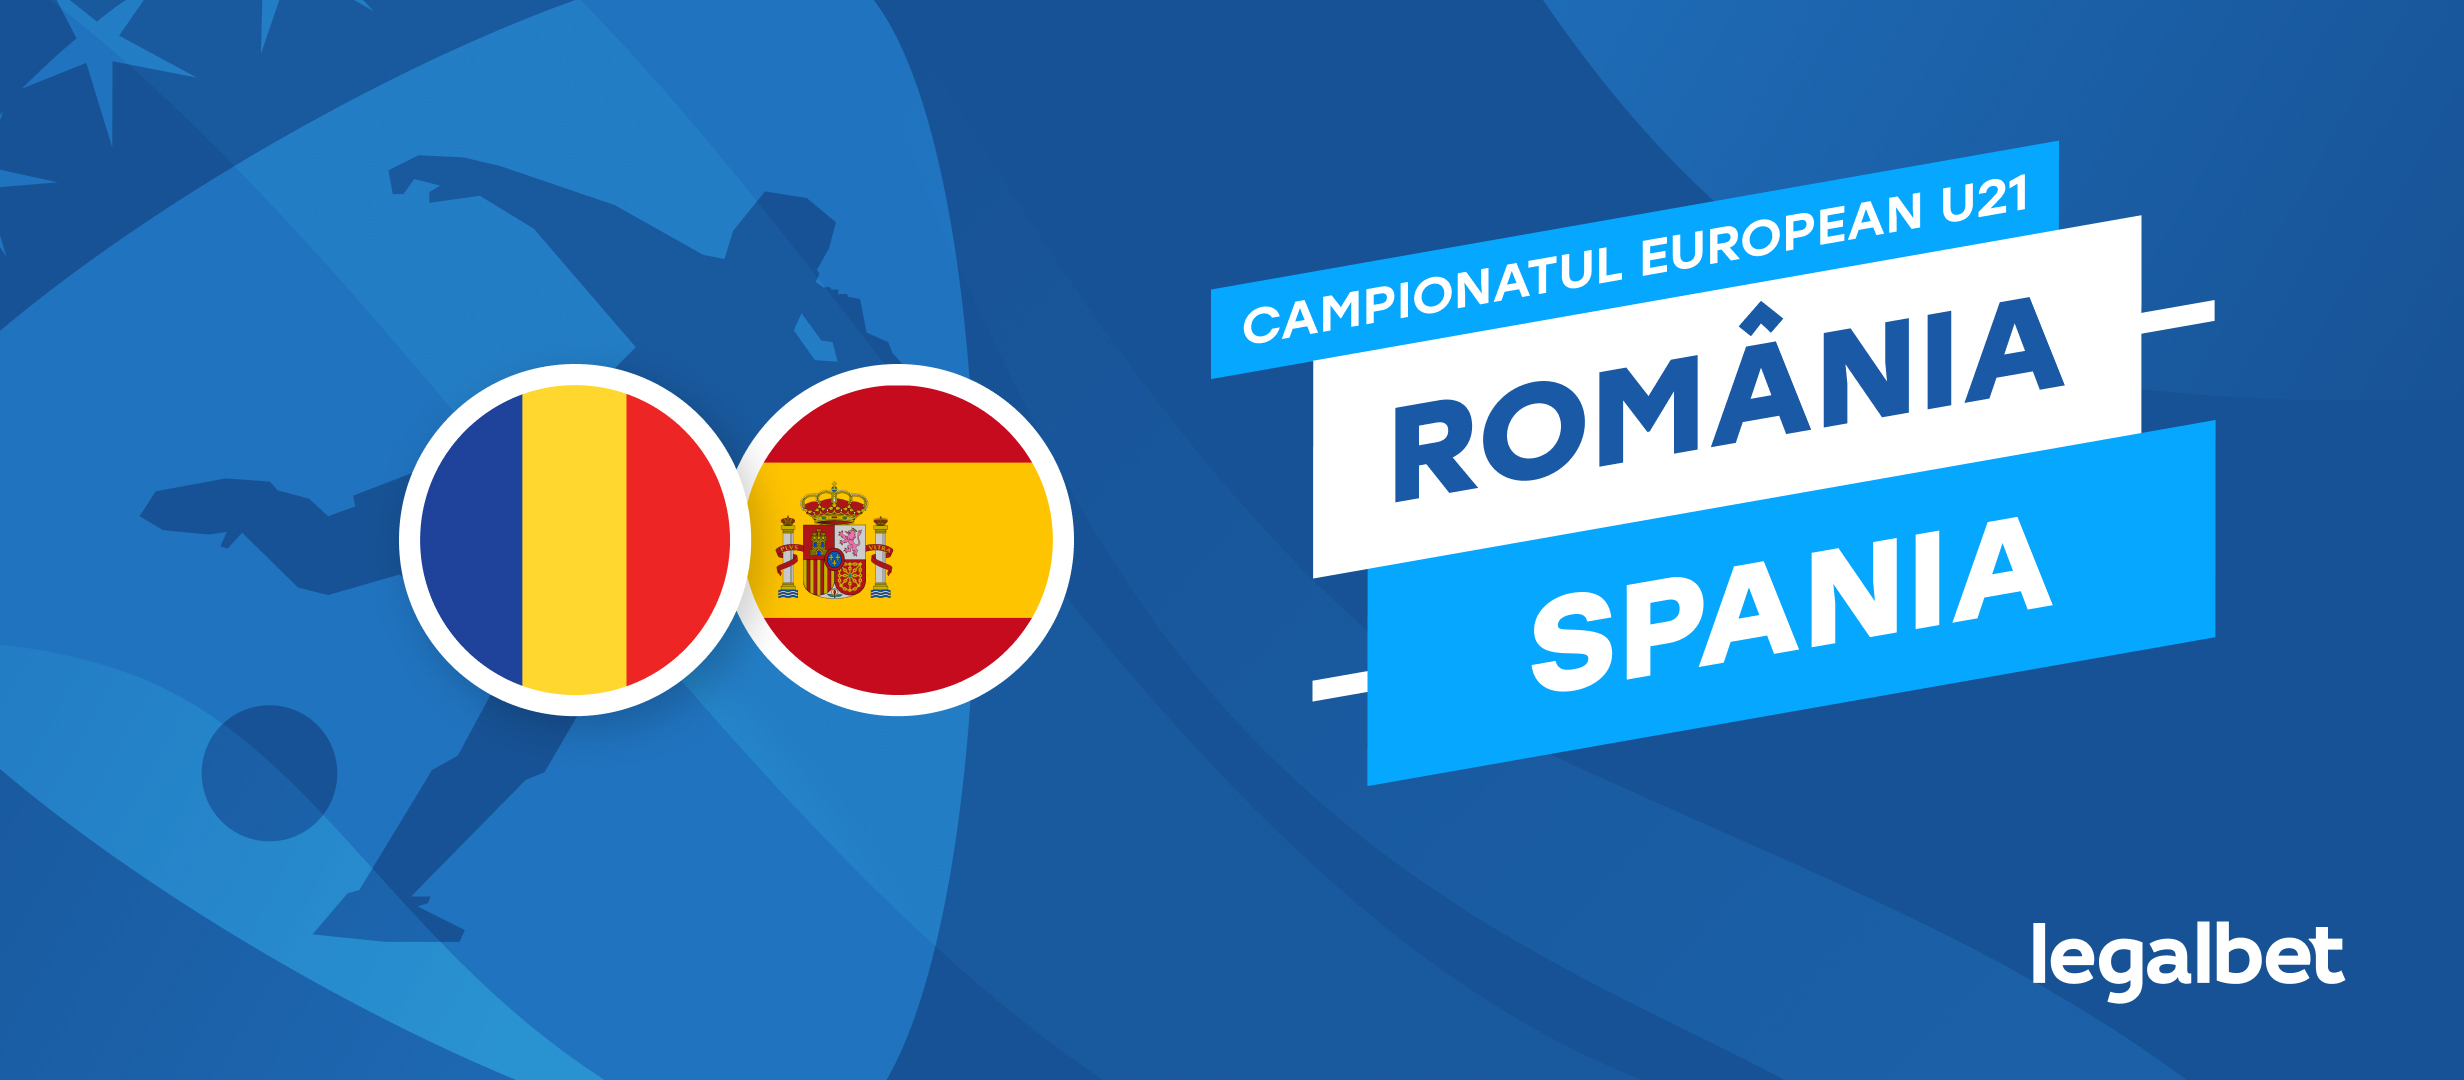 Romania U21 vs Spania U21 – cote la pariuri, ponturi si informatii